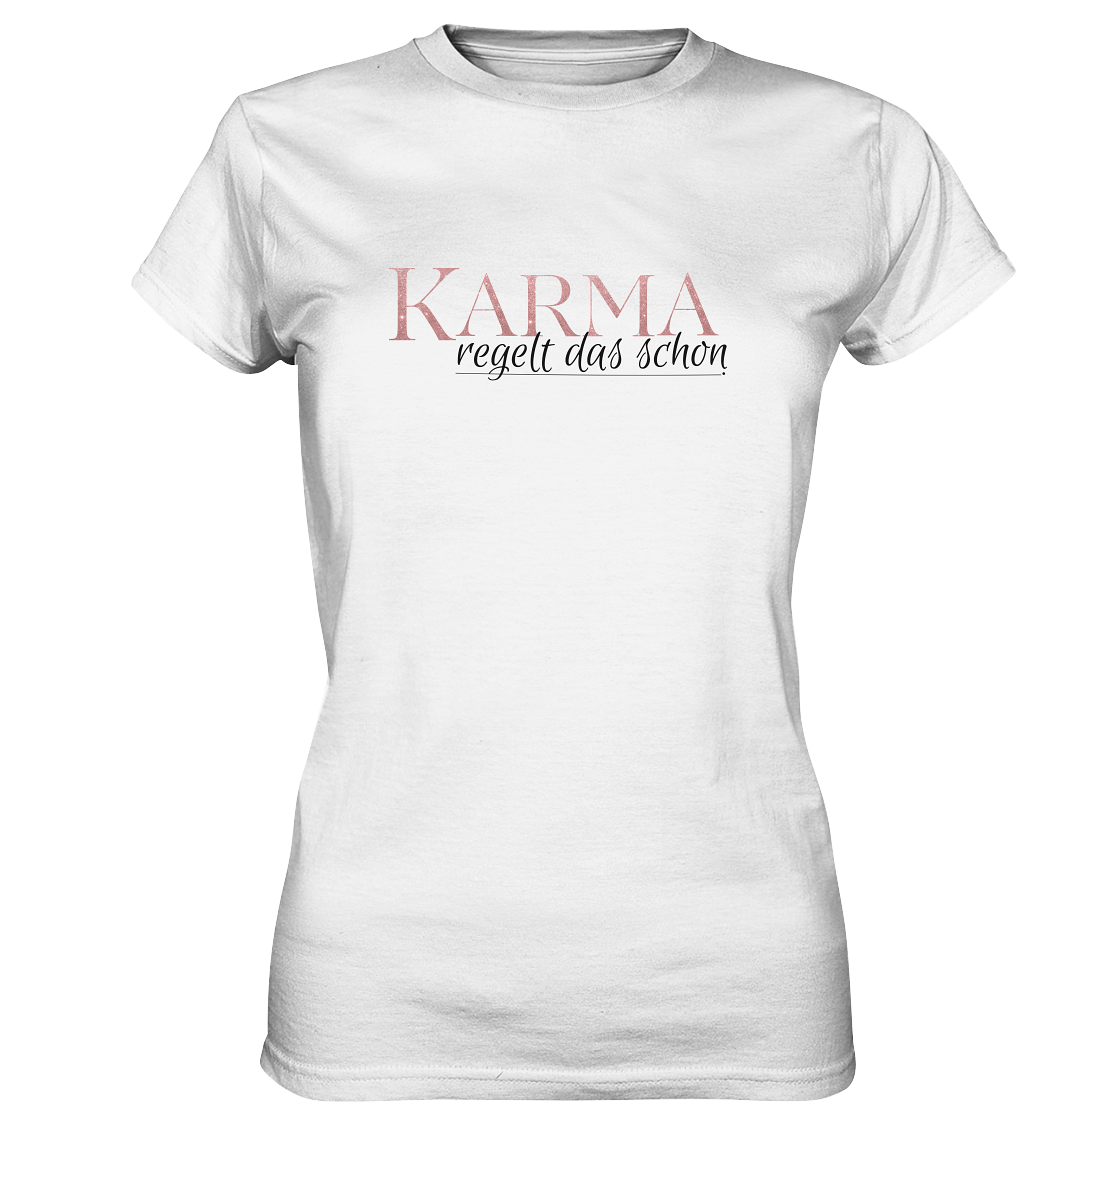 Karma regelt das schon  - Ladies Premium Shirt